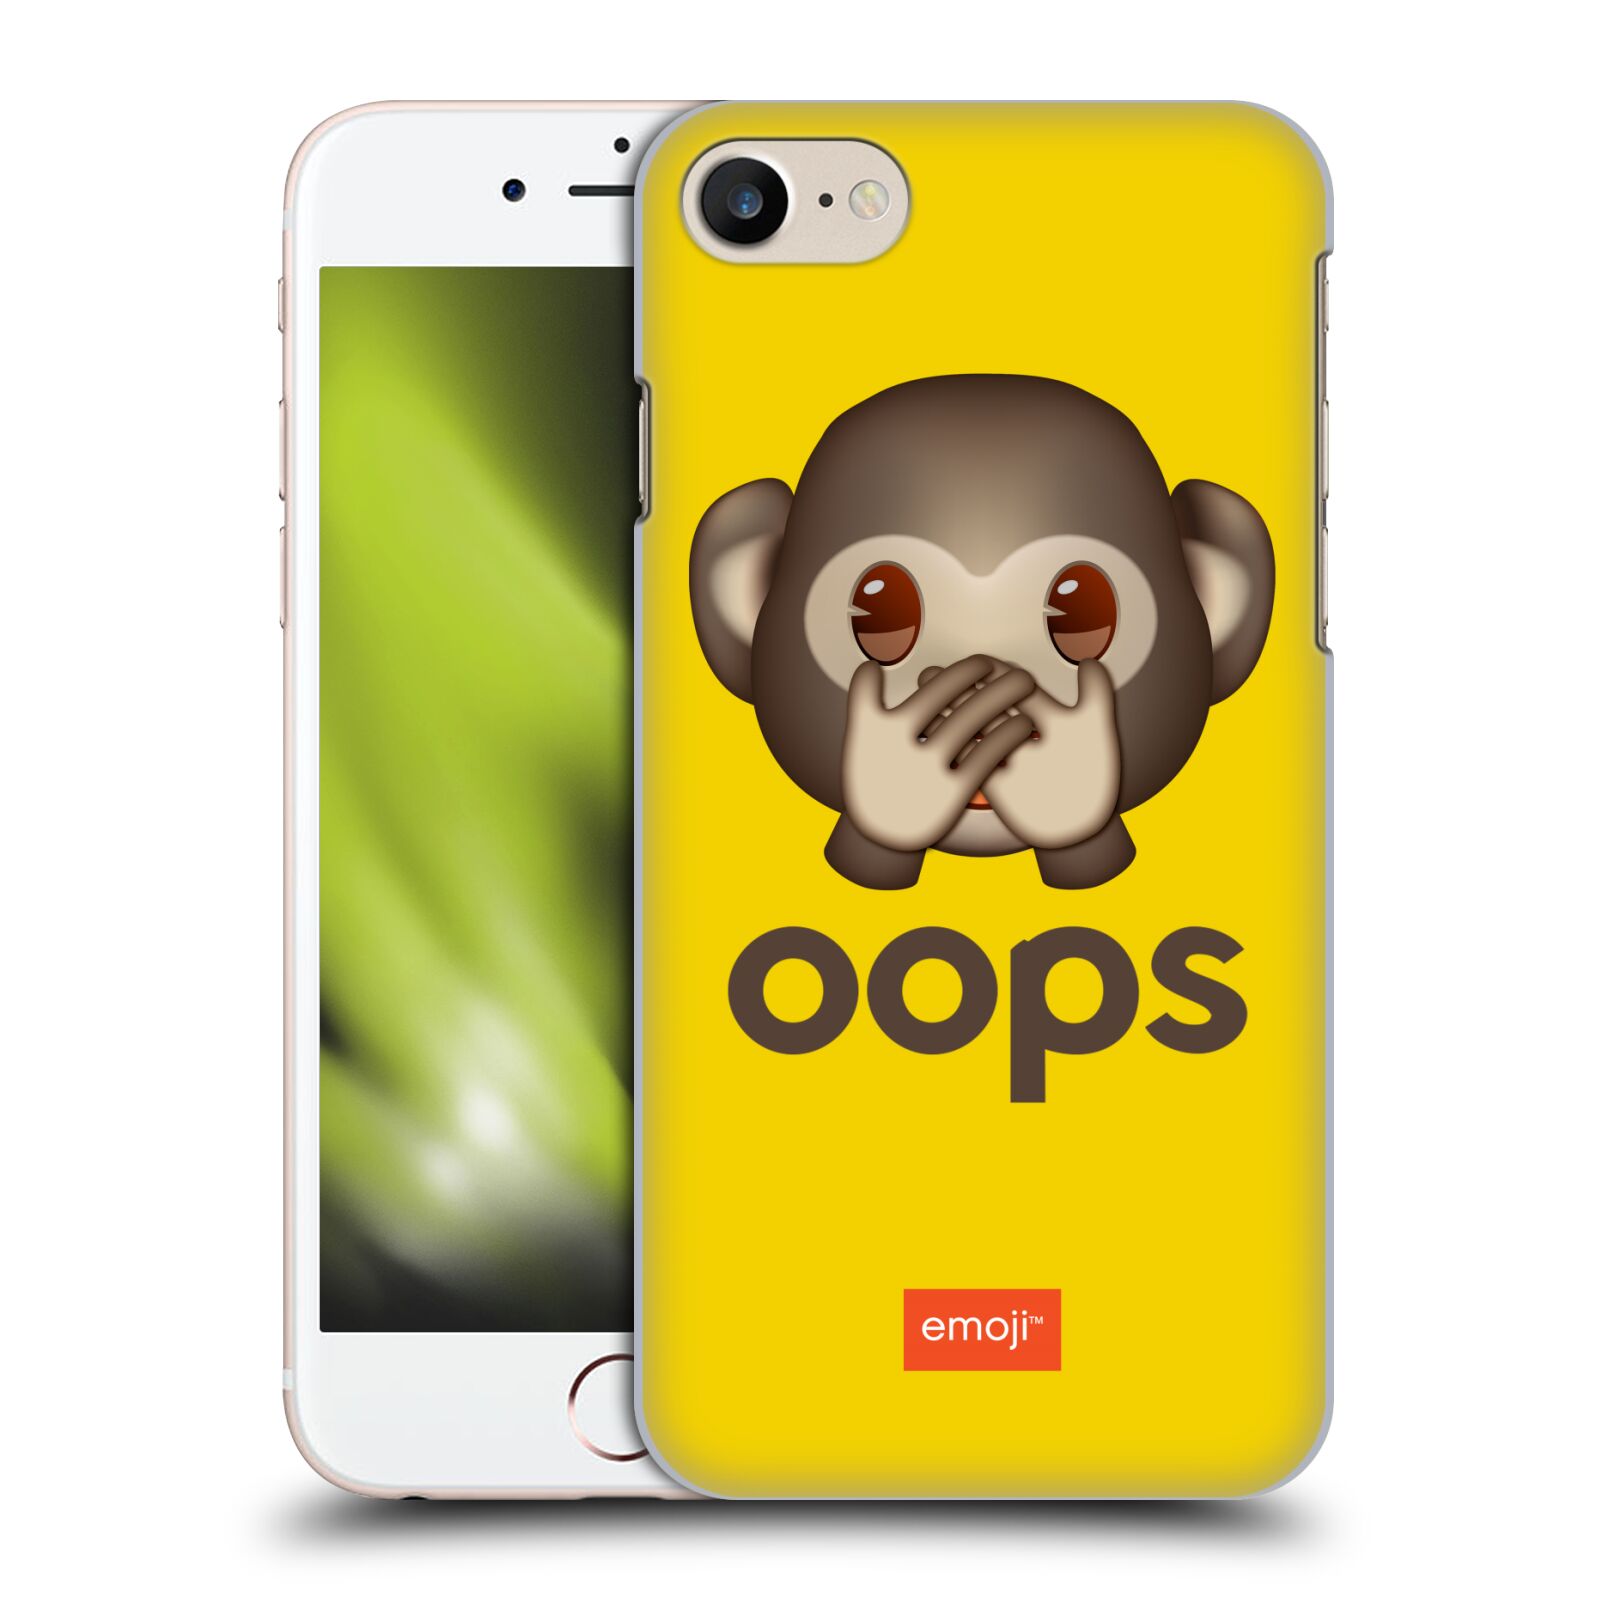 Plastové pouzdro na mobil Apple iPhone 7 HEAD CASE EMOJI - Opička OOPS (Plastový kryt či obal s oficiálním motivem EMOJI na mobilní telefon Apple iPhone 7)